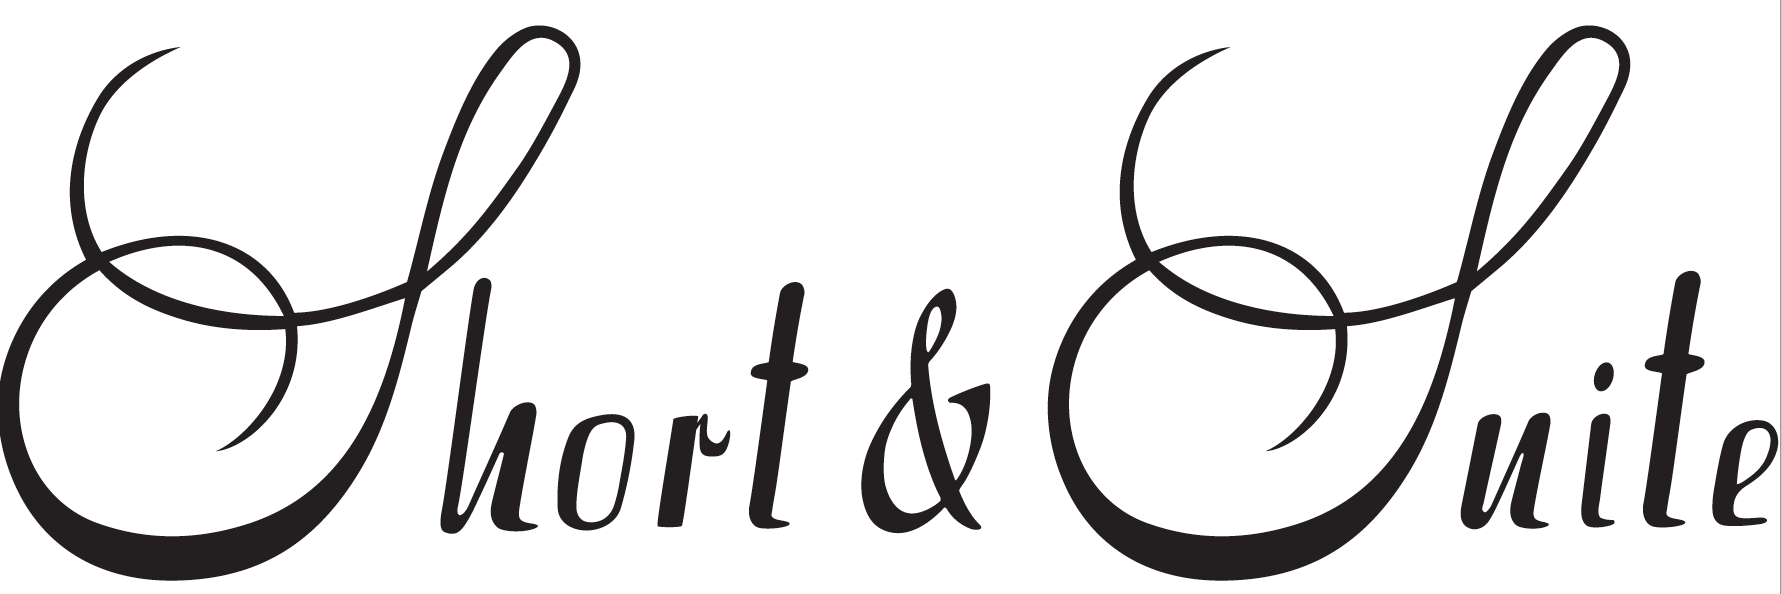 Short & Suite_logo